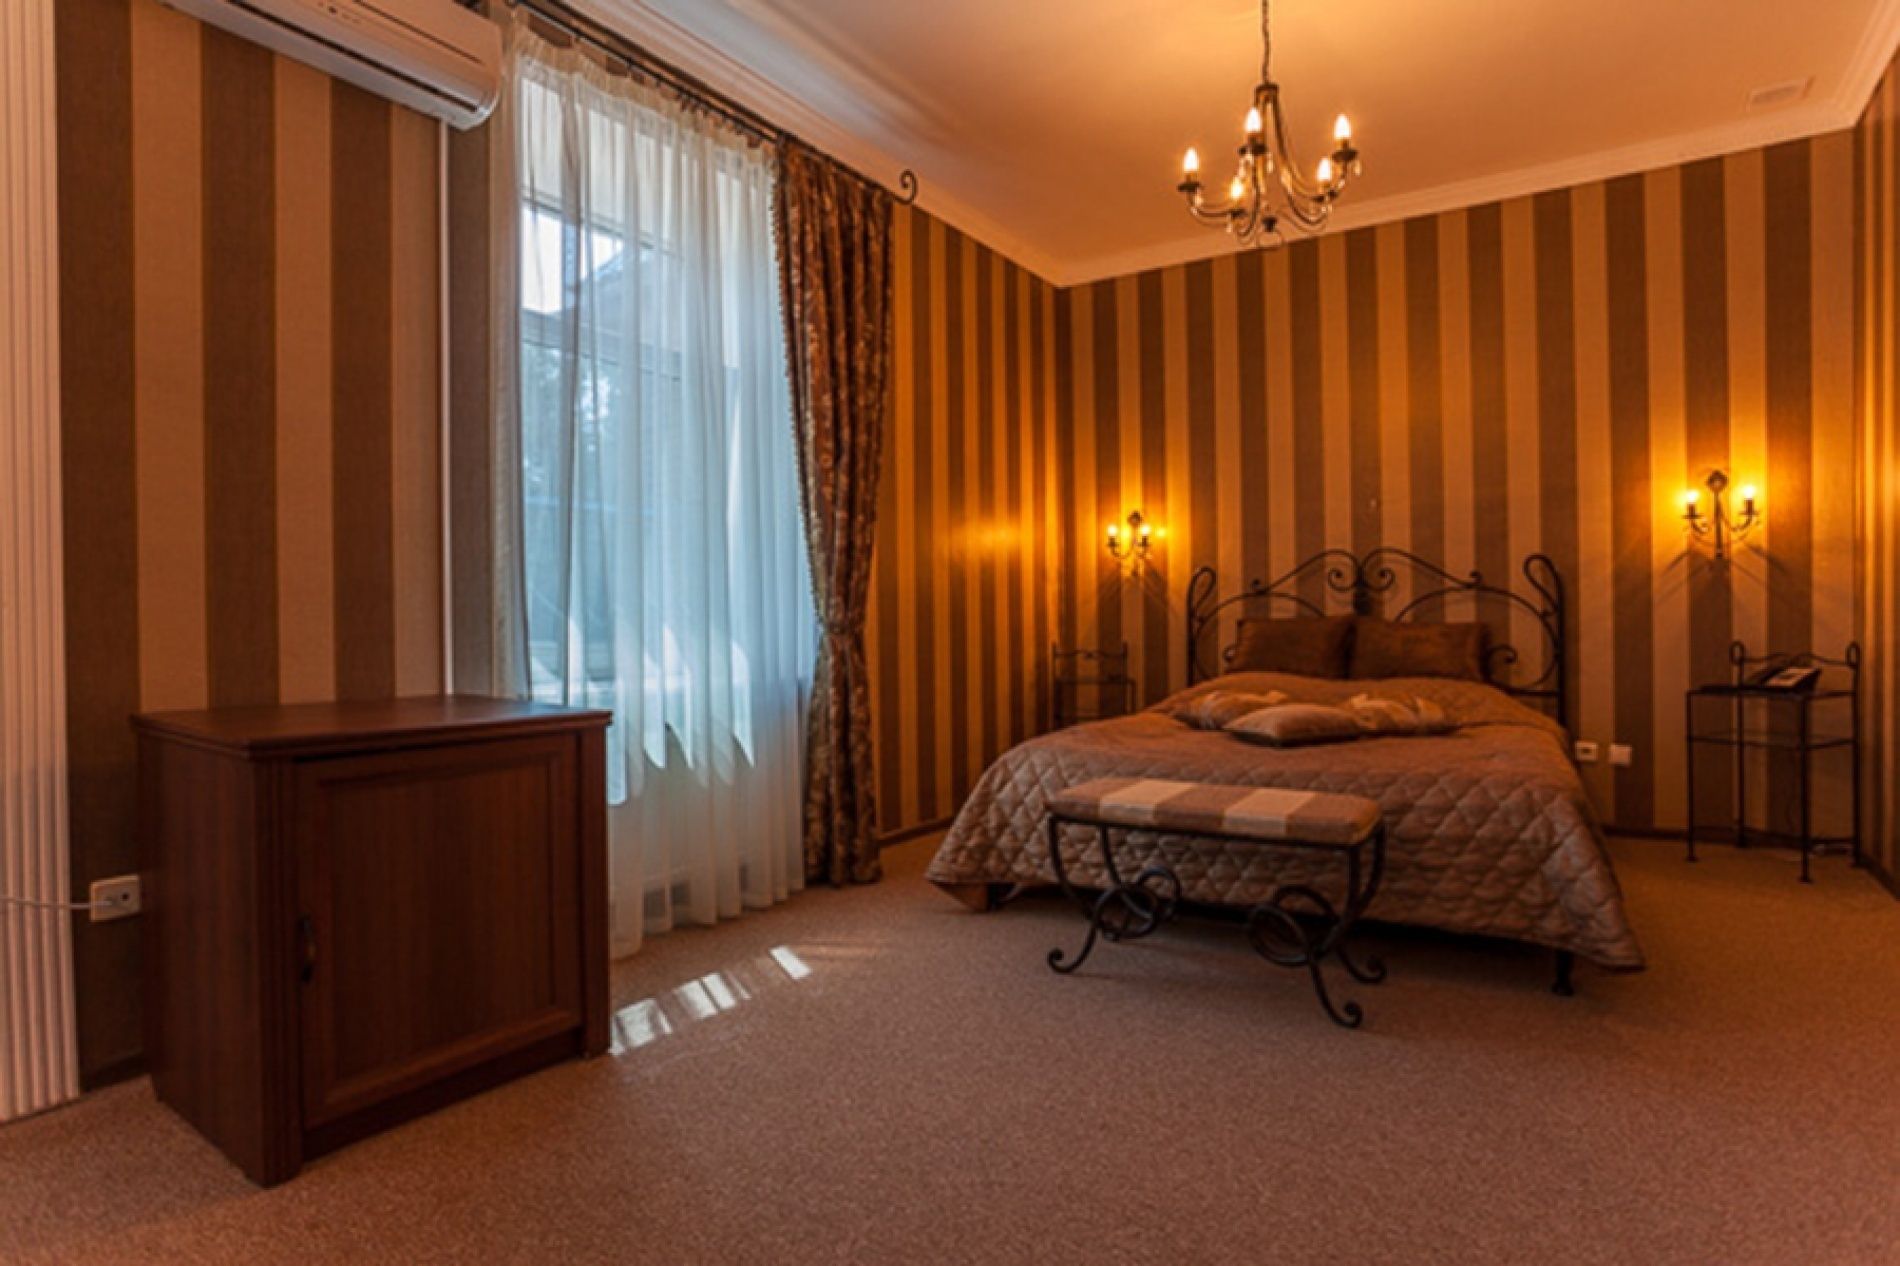  СПА-отель «Бекасово» Московская область «Гостиный дом» 3-местный 2-комнатный «Люкс» Double «Анкара», фото 1